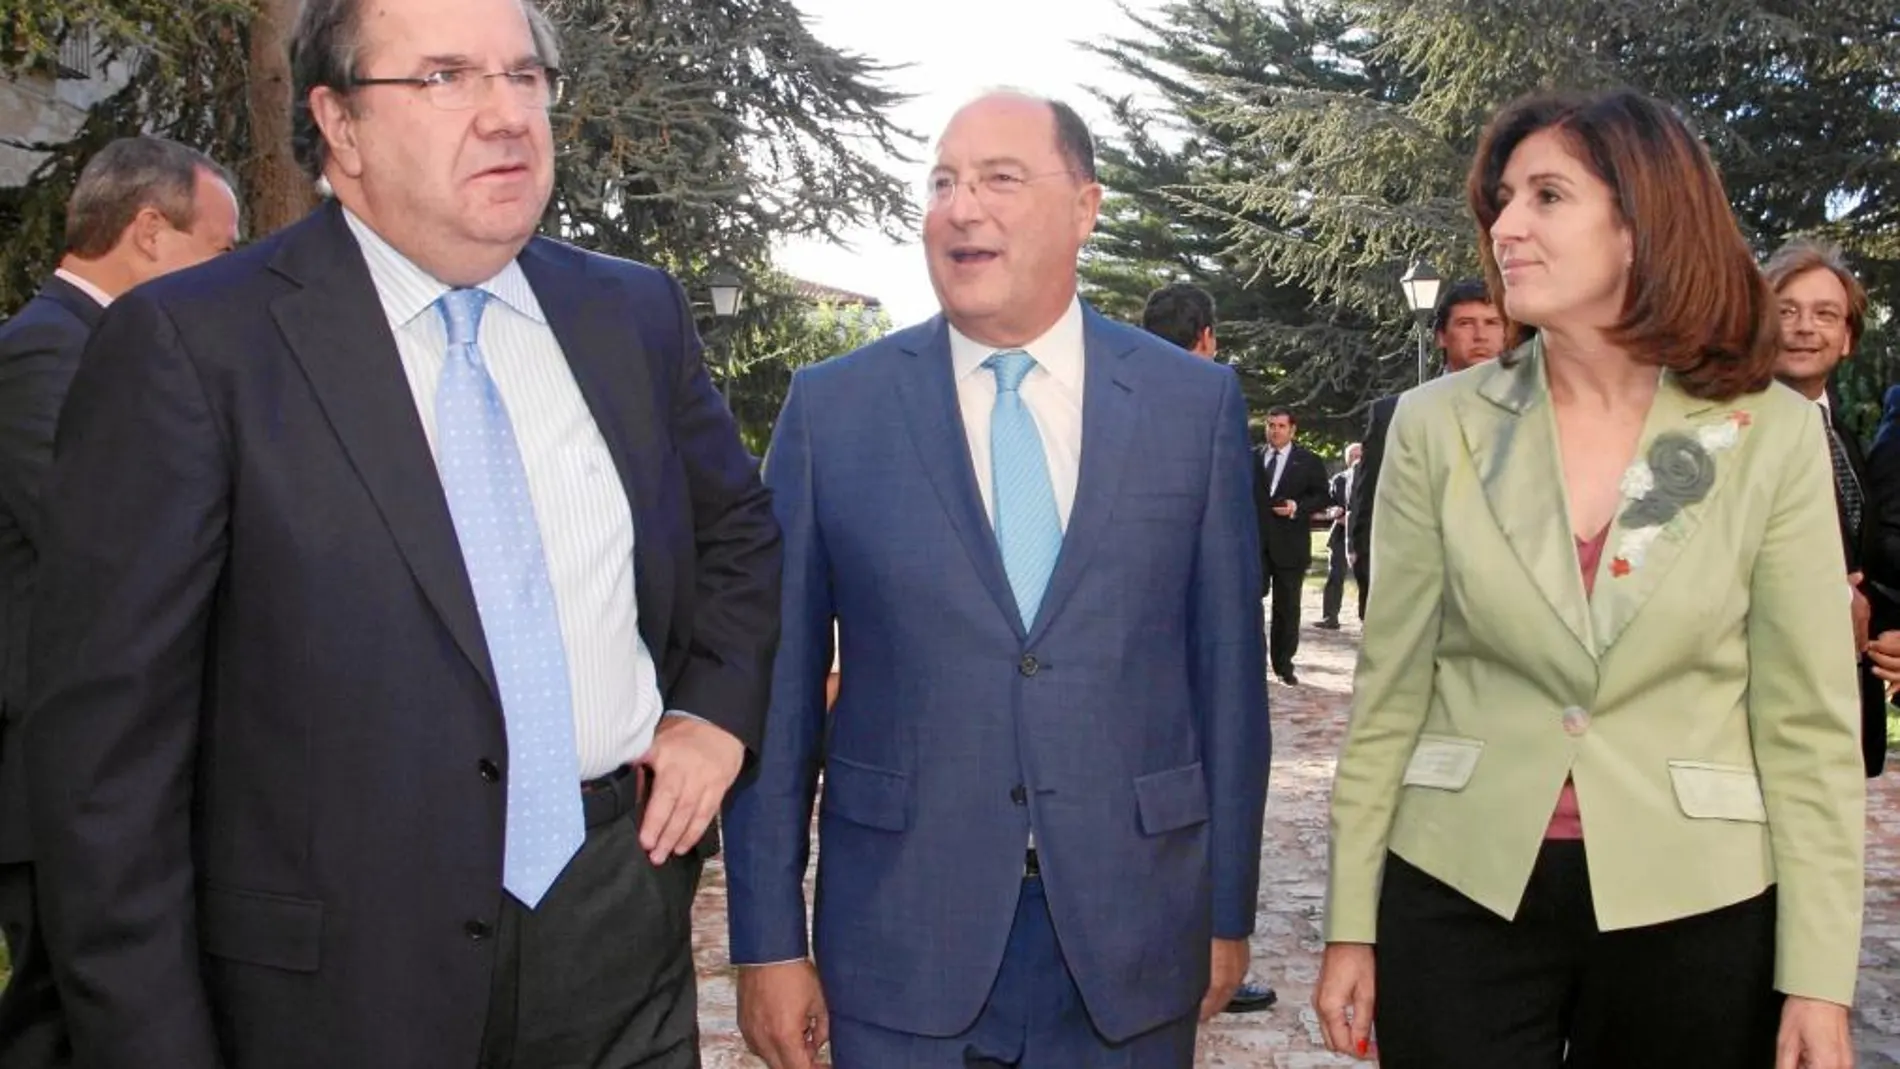 El presidente del Grupo Matarromera, Carlos Moro, y su esposa reciben a Juan Vicente Herrera